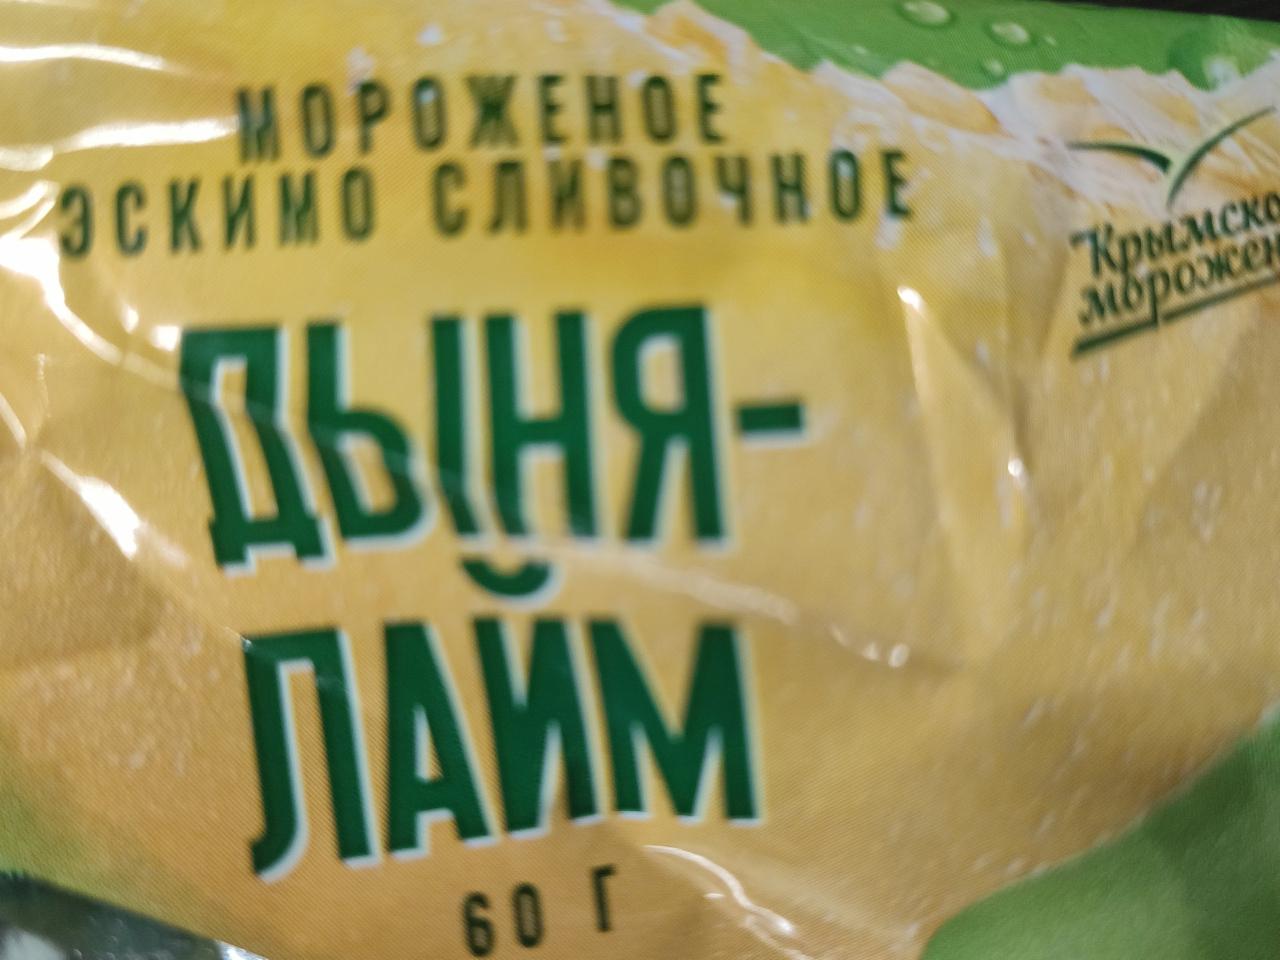 Фото - мороженое эскимо сливочное дыня-лайм Крымское